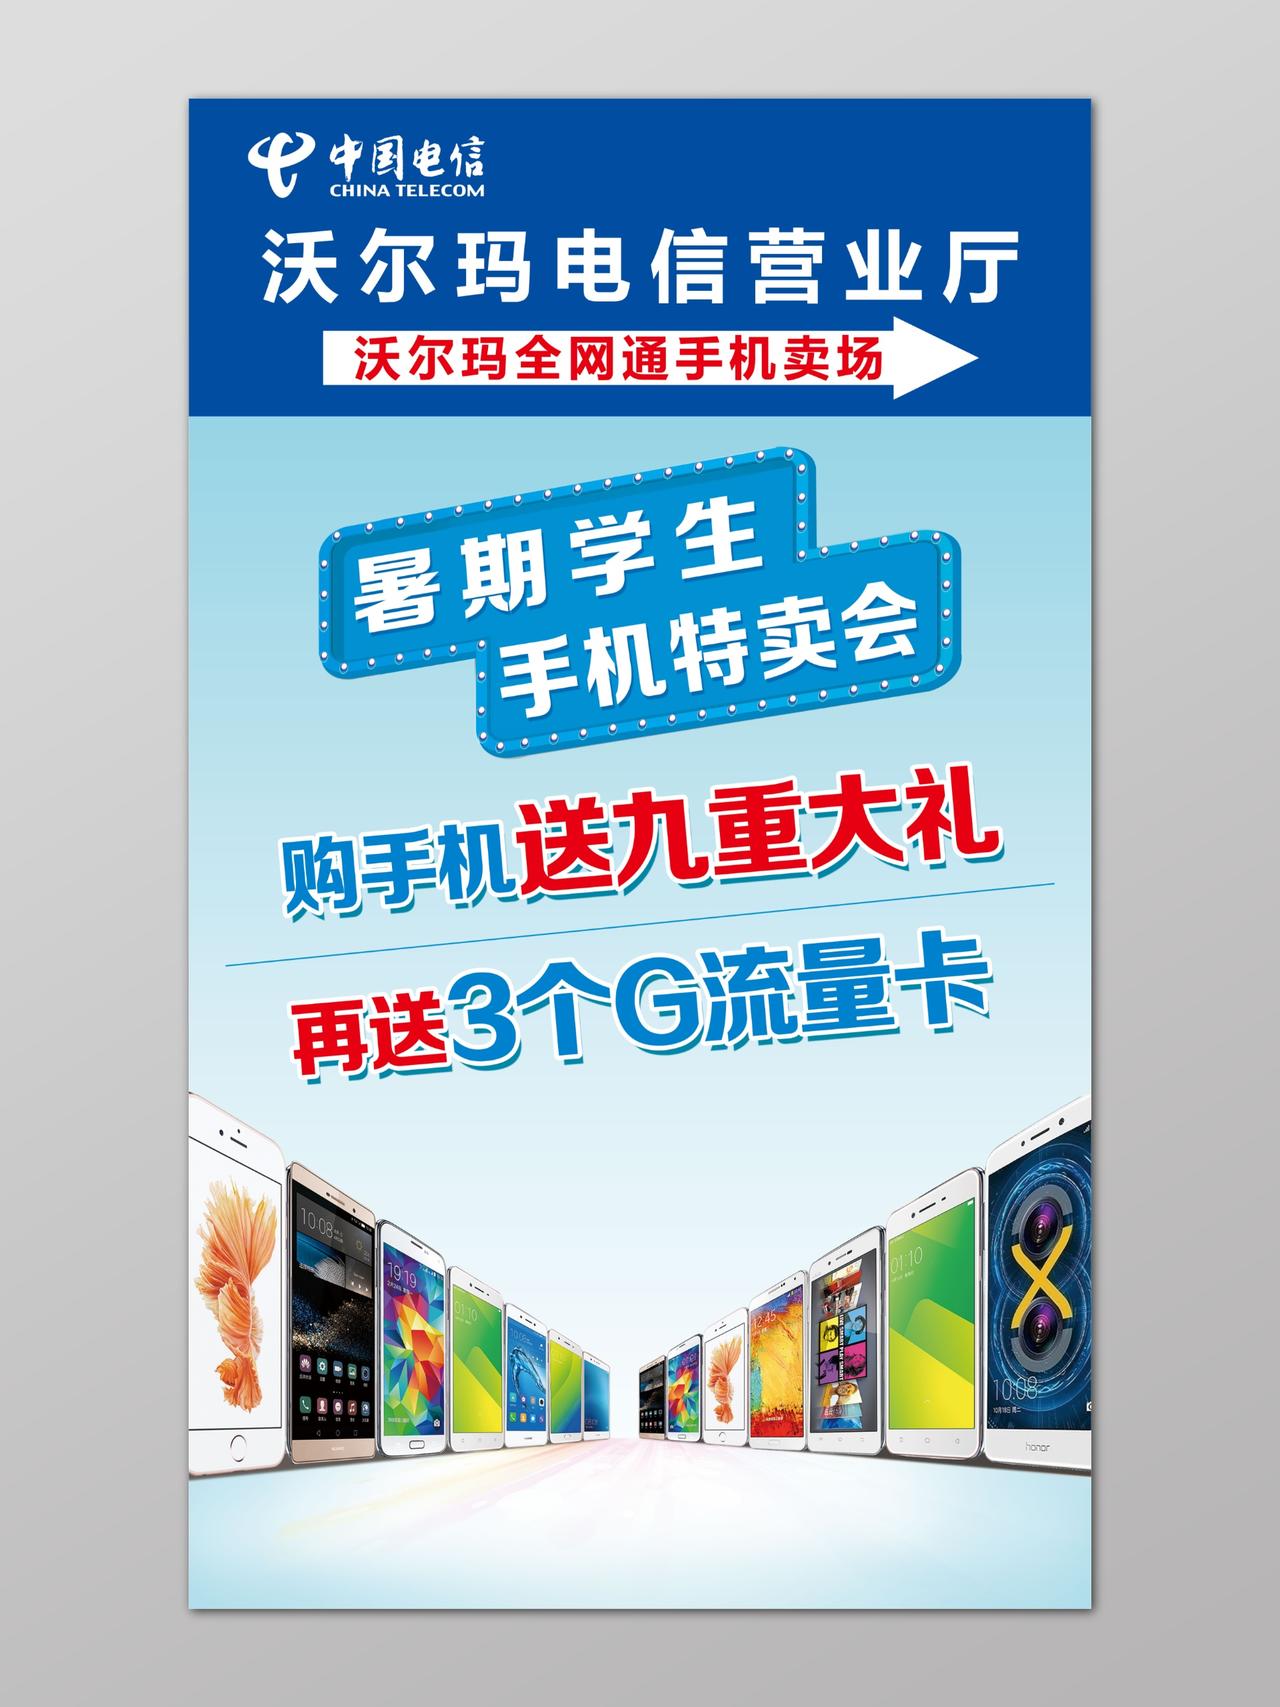 中国电信暑假特卖促销海报